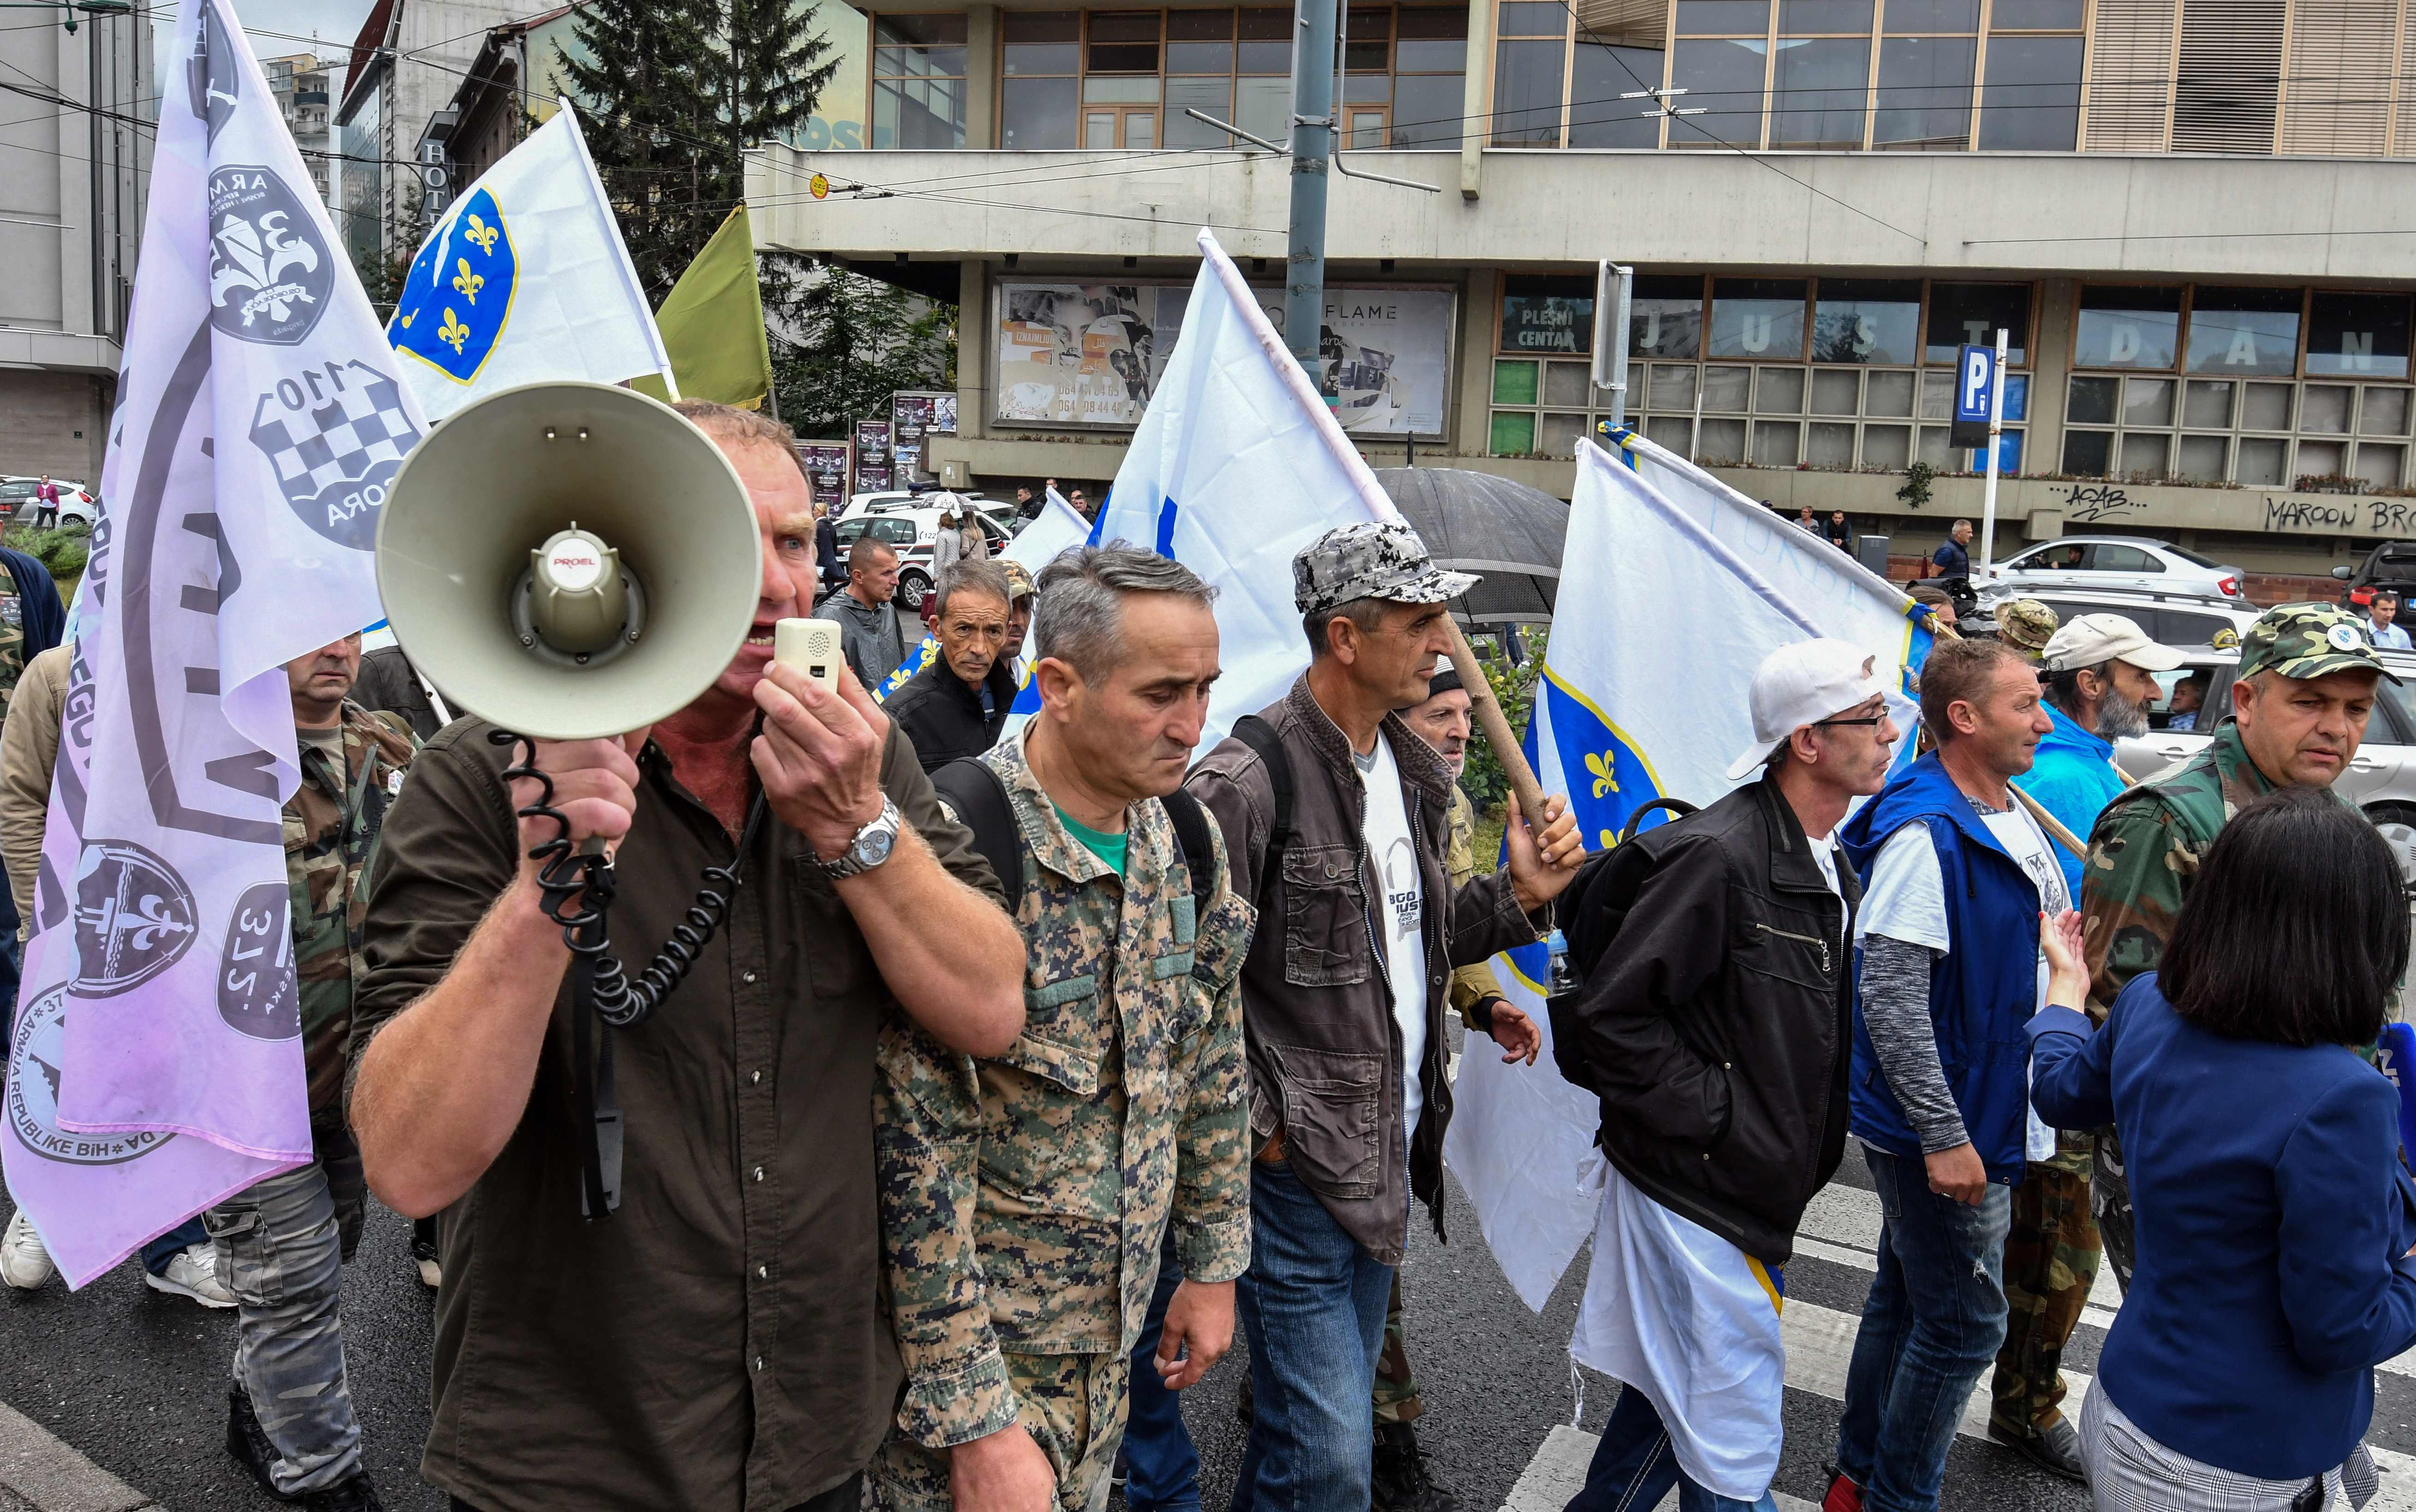 صور.. شرطة البوسنة تشتبك مع مئات من المحاربين القدماء بالعاصمة سراييفو  1385037-البوسنة-(3)